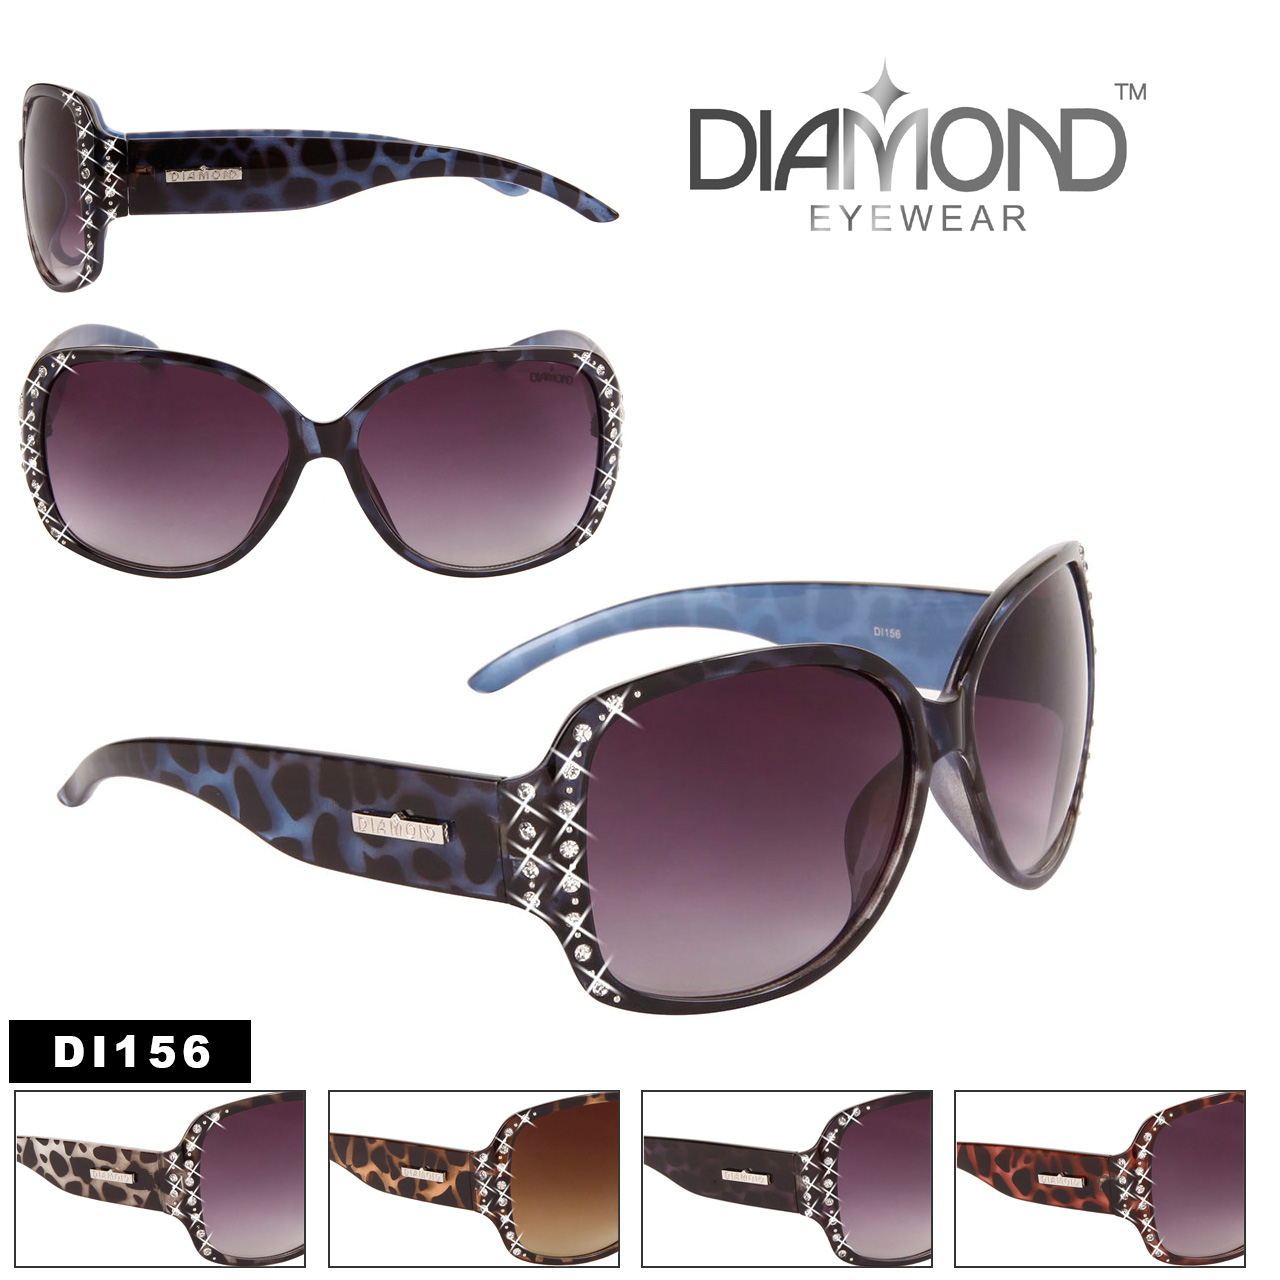 Diamond™ Eyewear Bulk Rhinestone Sunglasses - Style #DI156 (Assorted Colors) (12 pcs.)